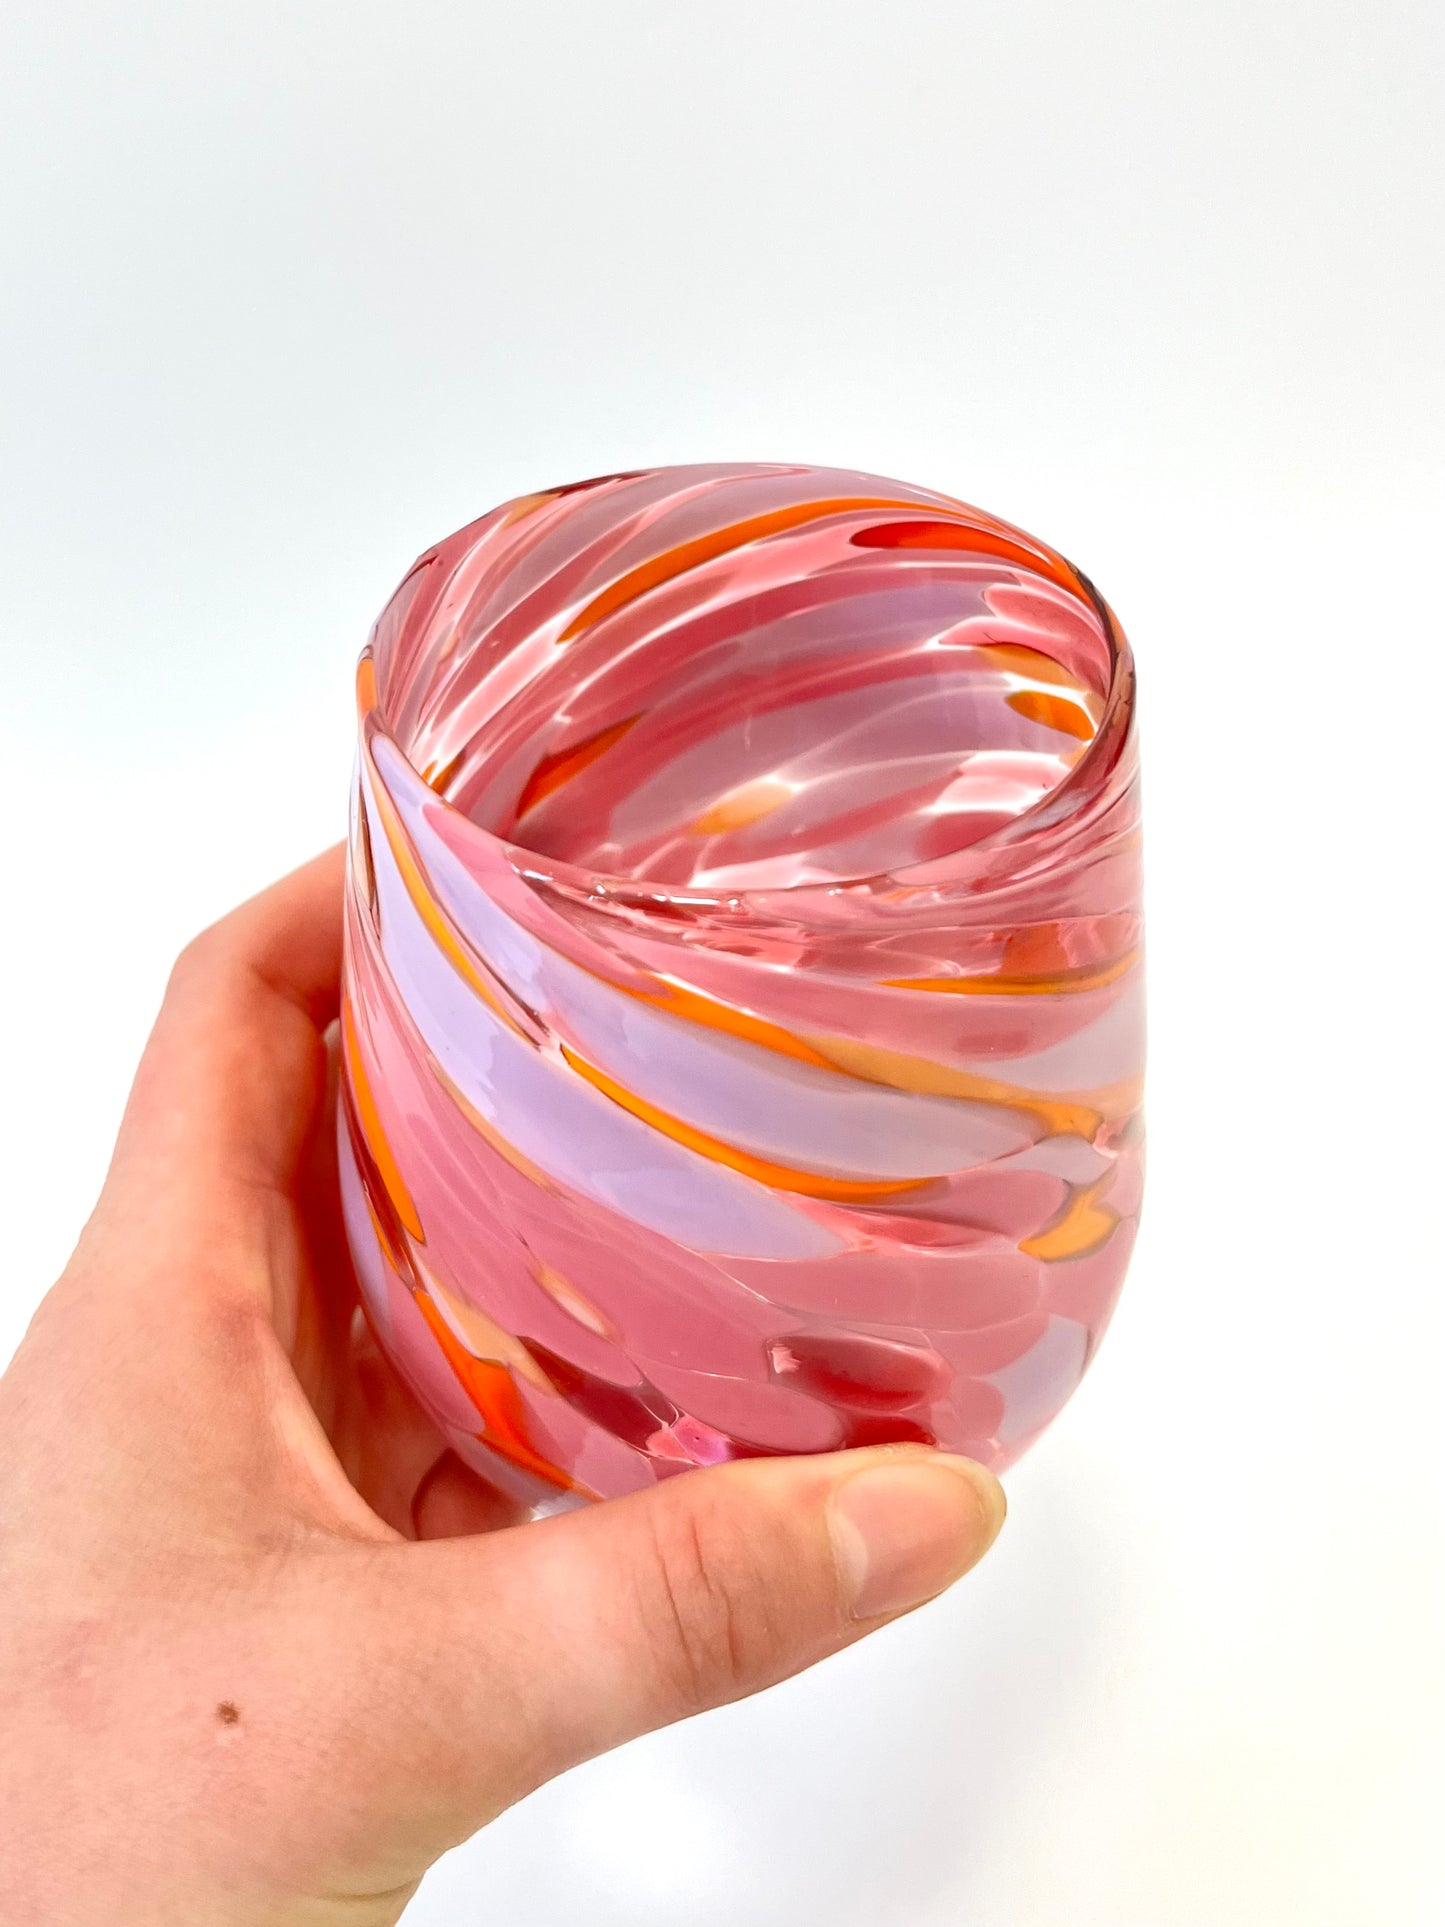 Handblown Glass Tumbler - 'Lush' Edition